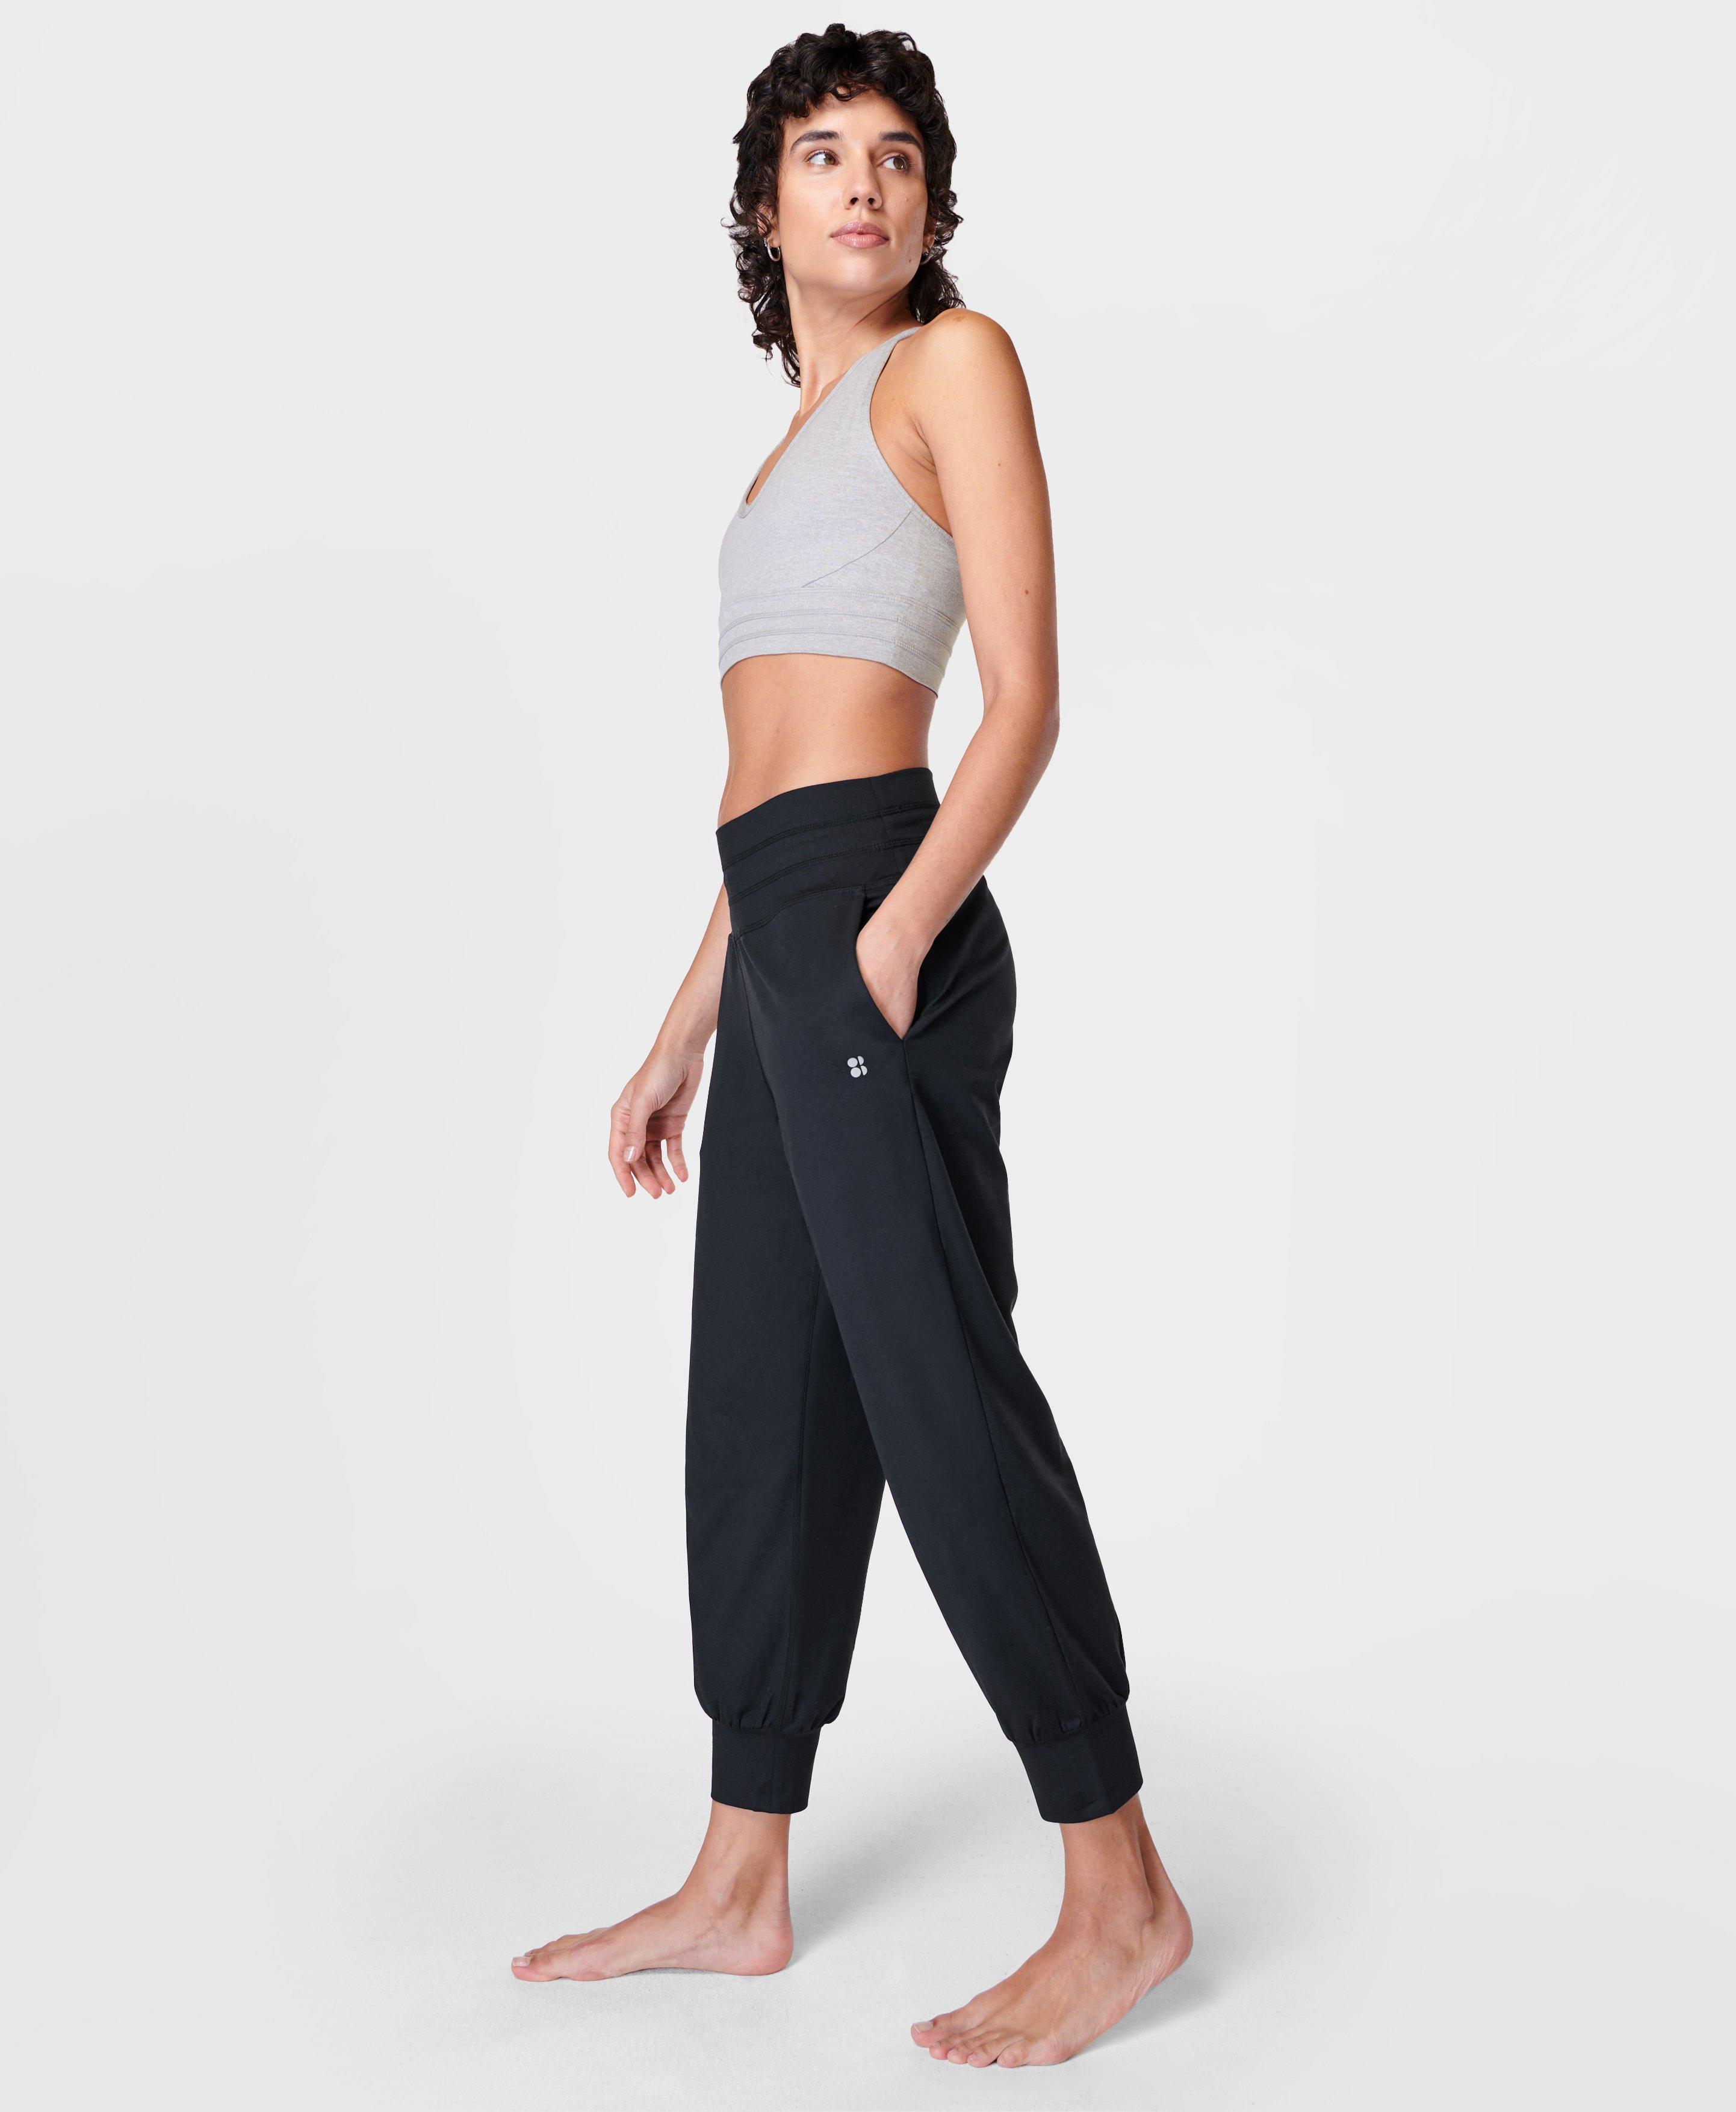 DZEN Yoga Set, Yoga Tank Top, Delicate Cotton Yoga Pants Women Yoga Wear,  White Yoga Comfy Pants, Yoga Gear Outfit Jumpsuit Workout Clothes -   Denmark